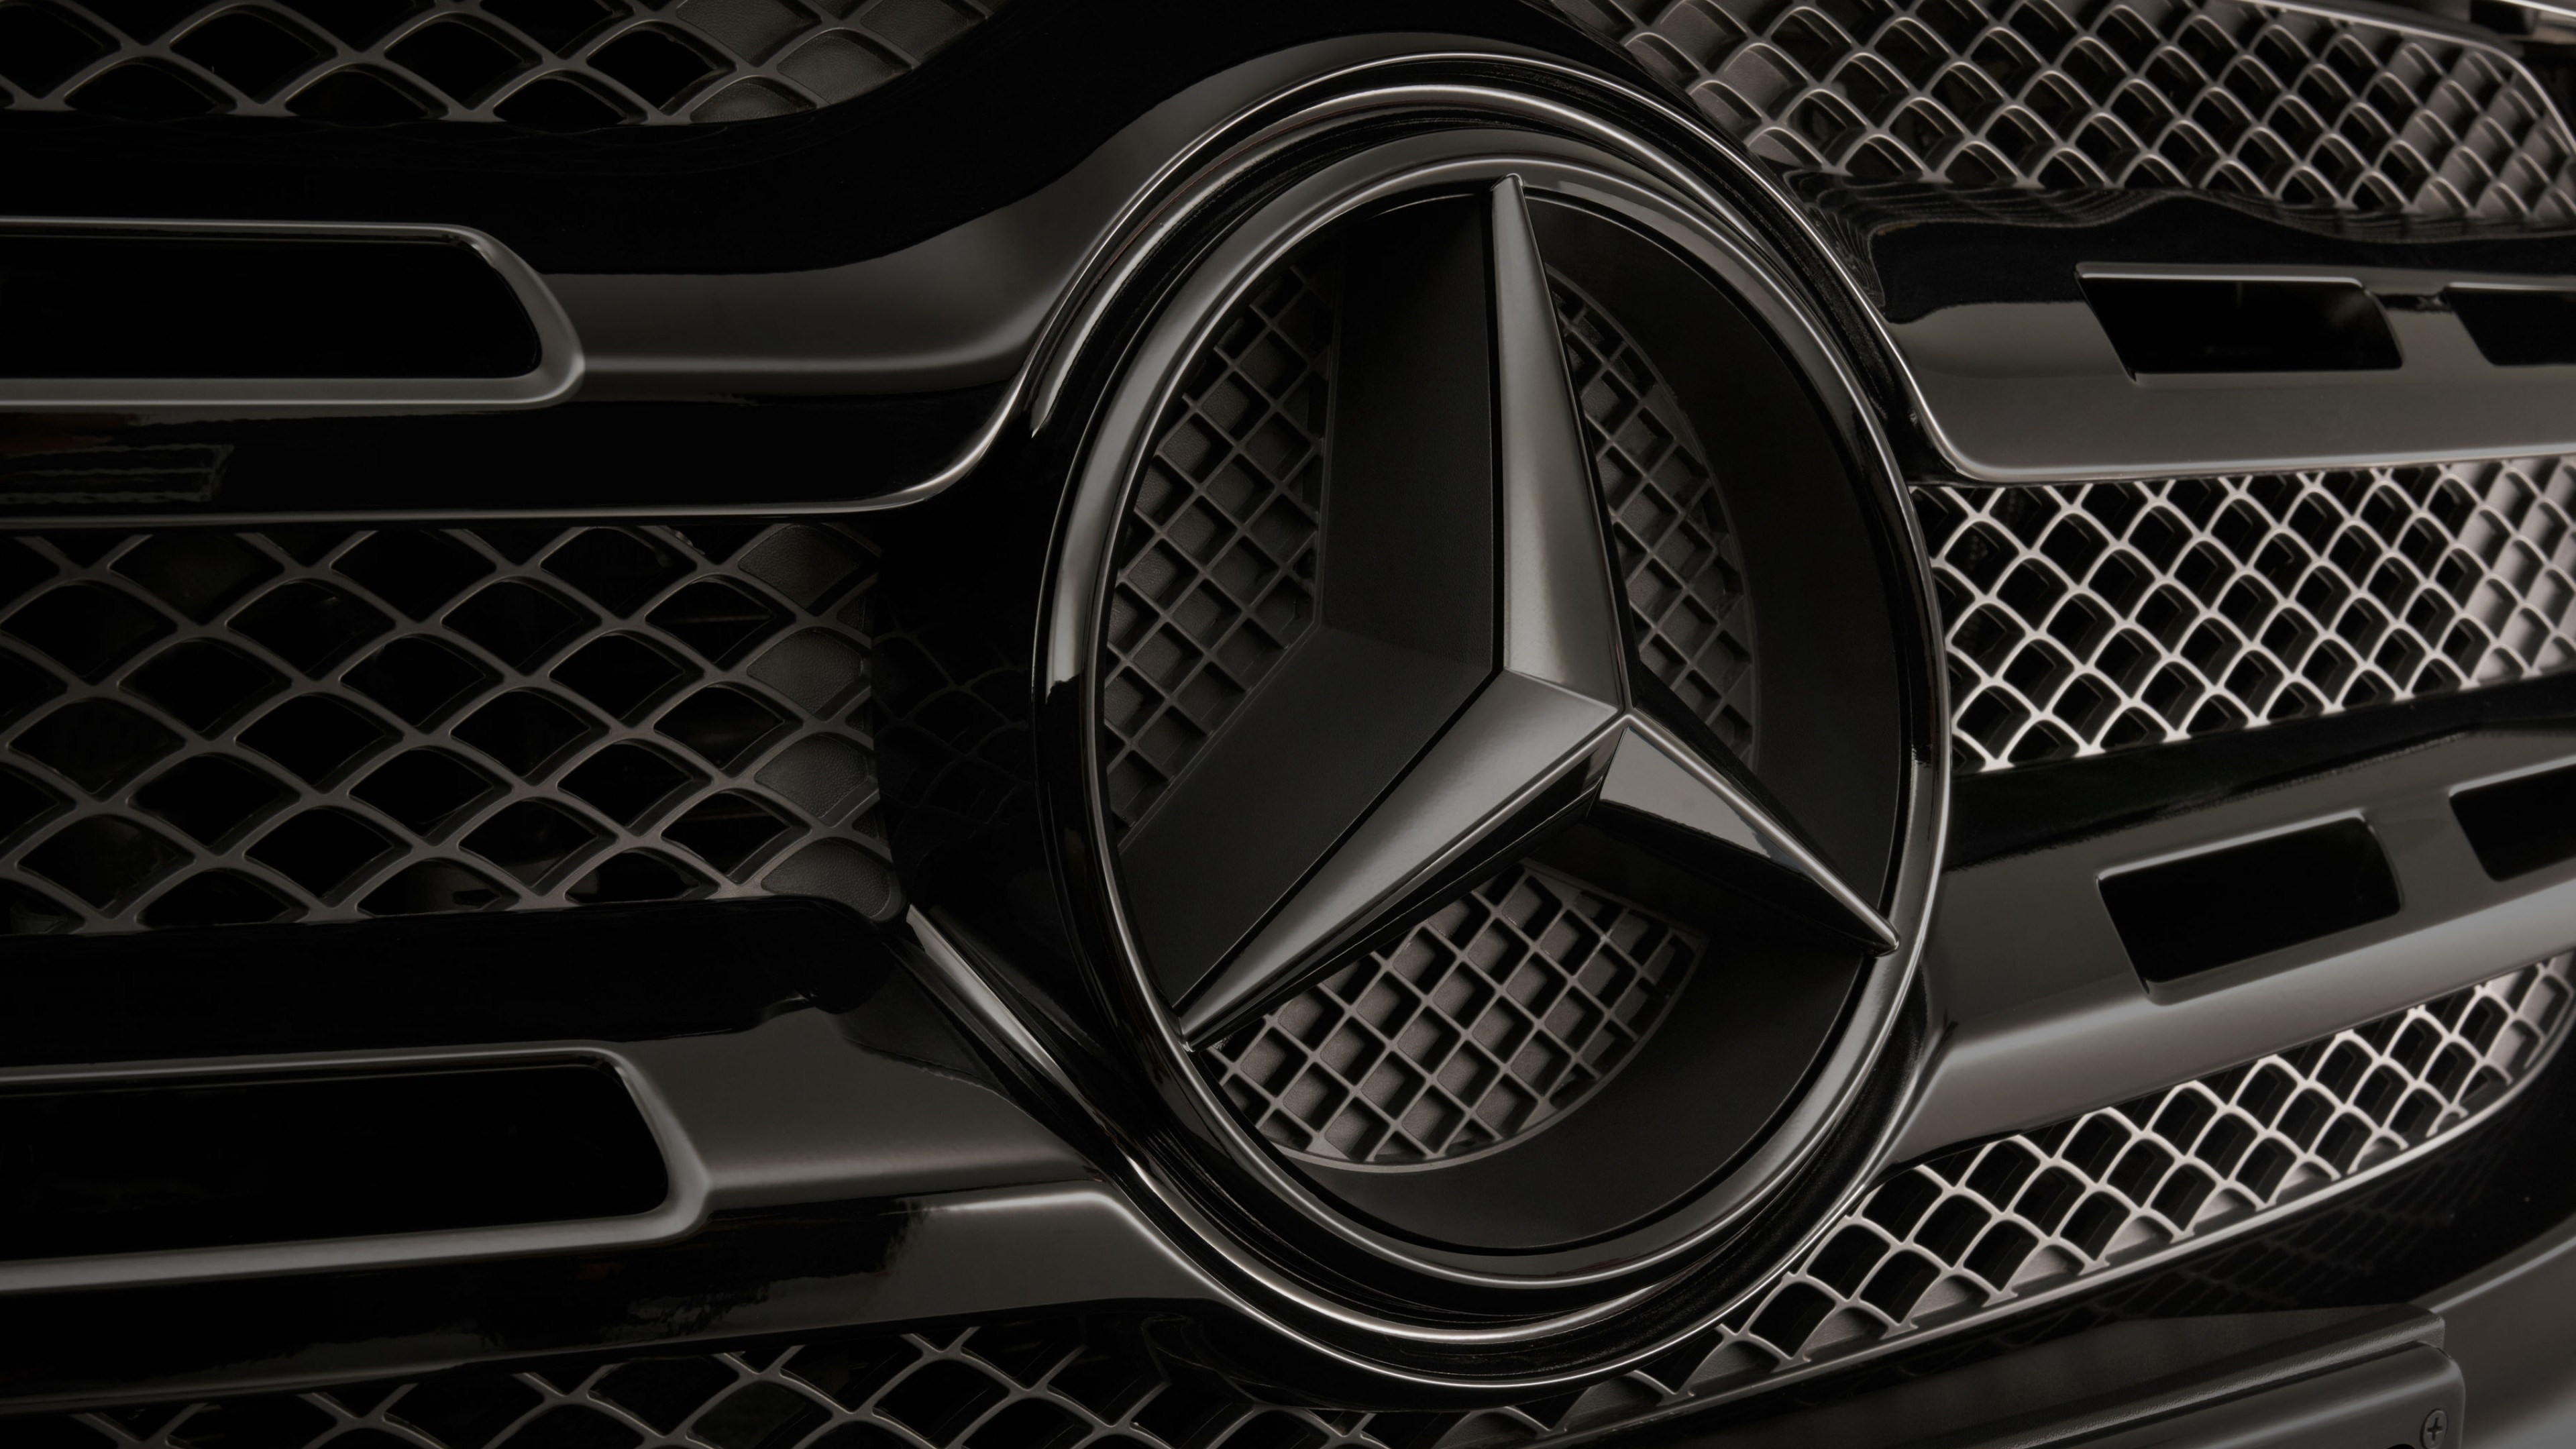 Mercedes Benz Wallpapers Hd , HD Wallpaper & Backgrounds